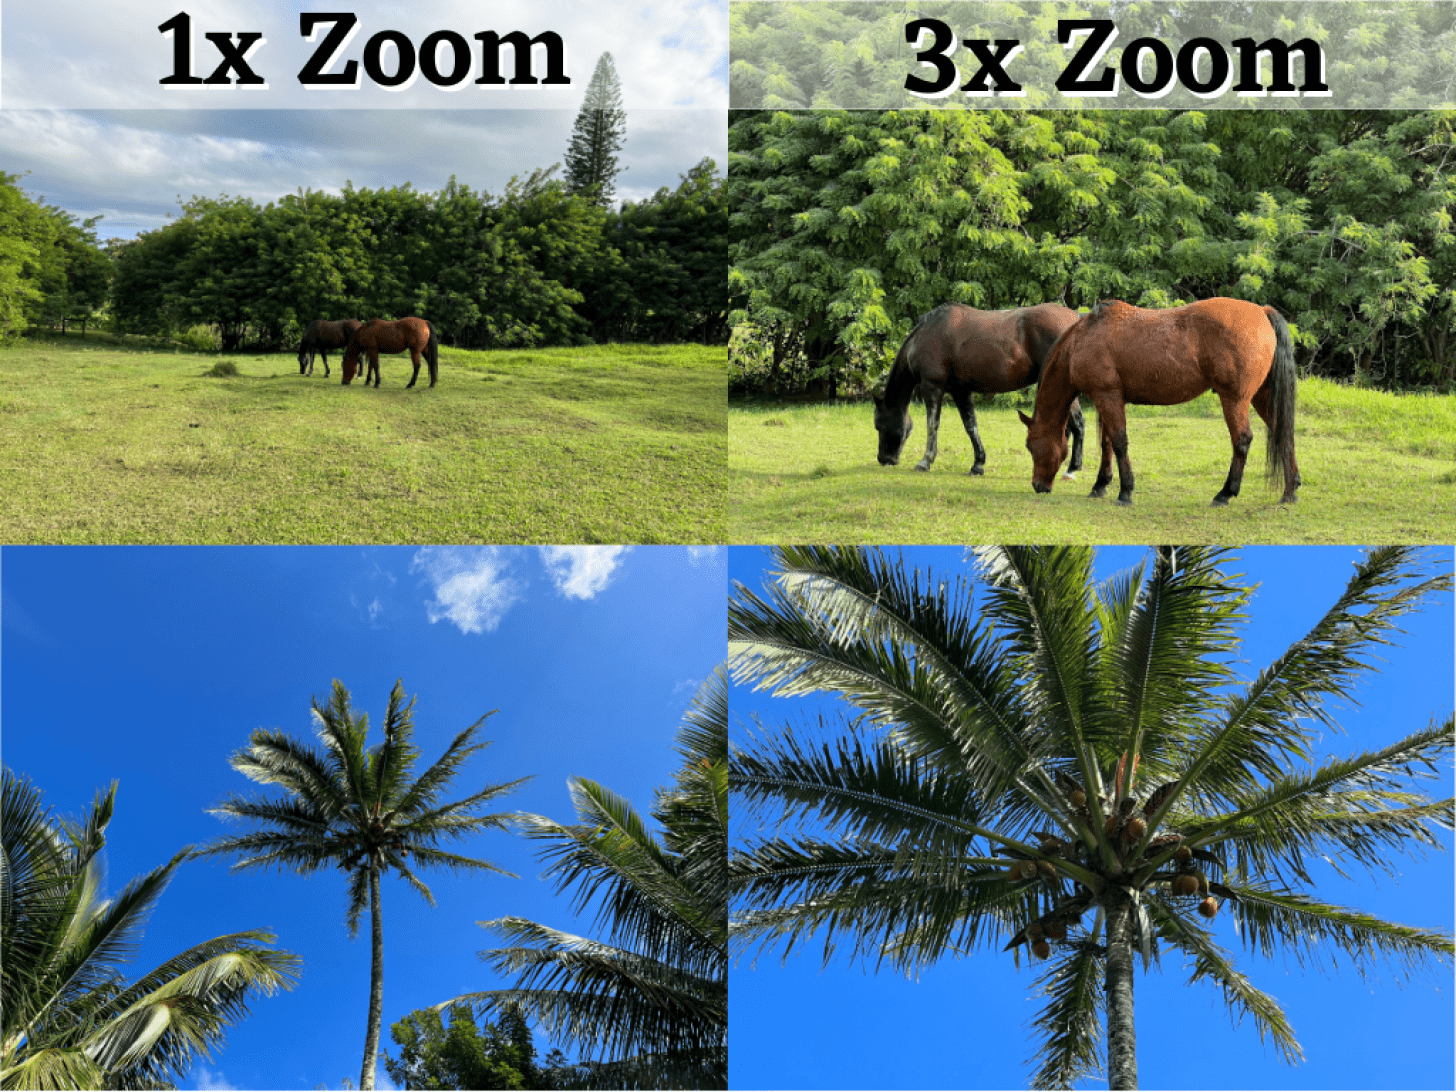 3x Zoom Means - grossissement de l'appareil photo numérique par rapport au zoom optique